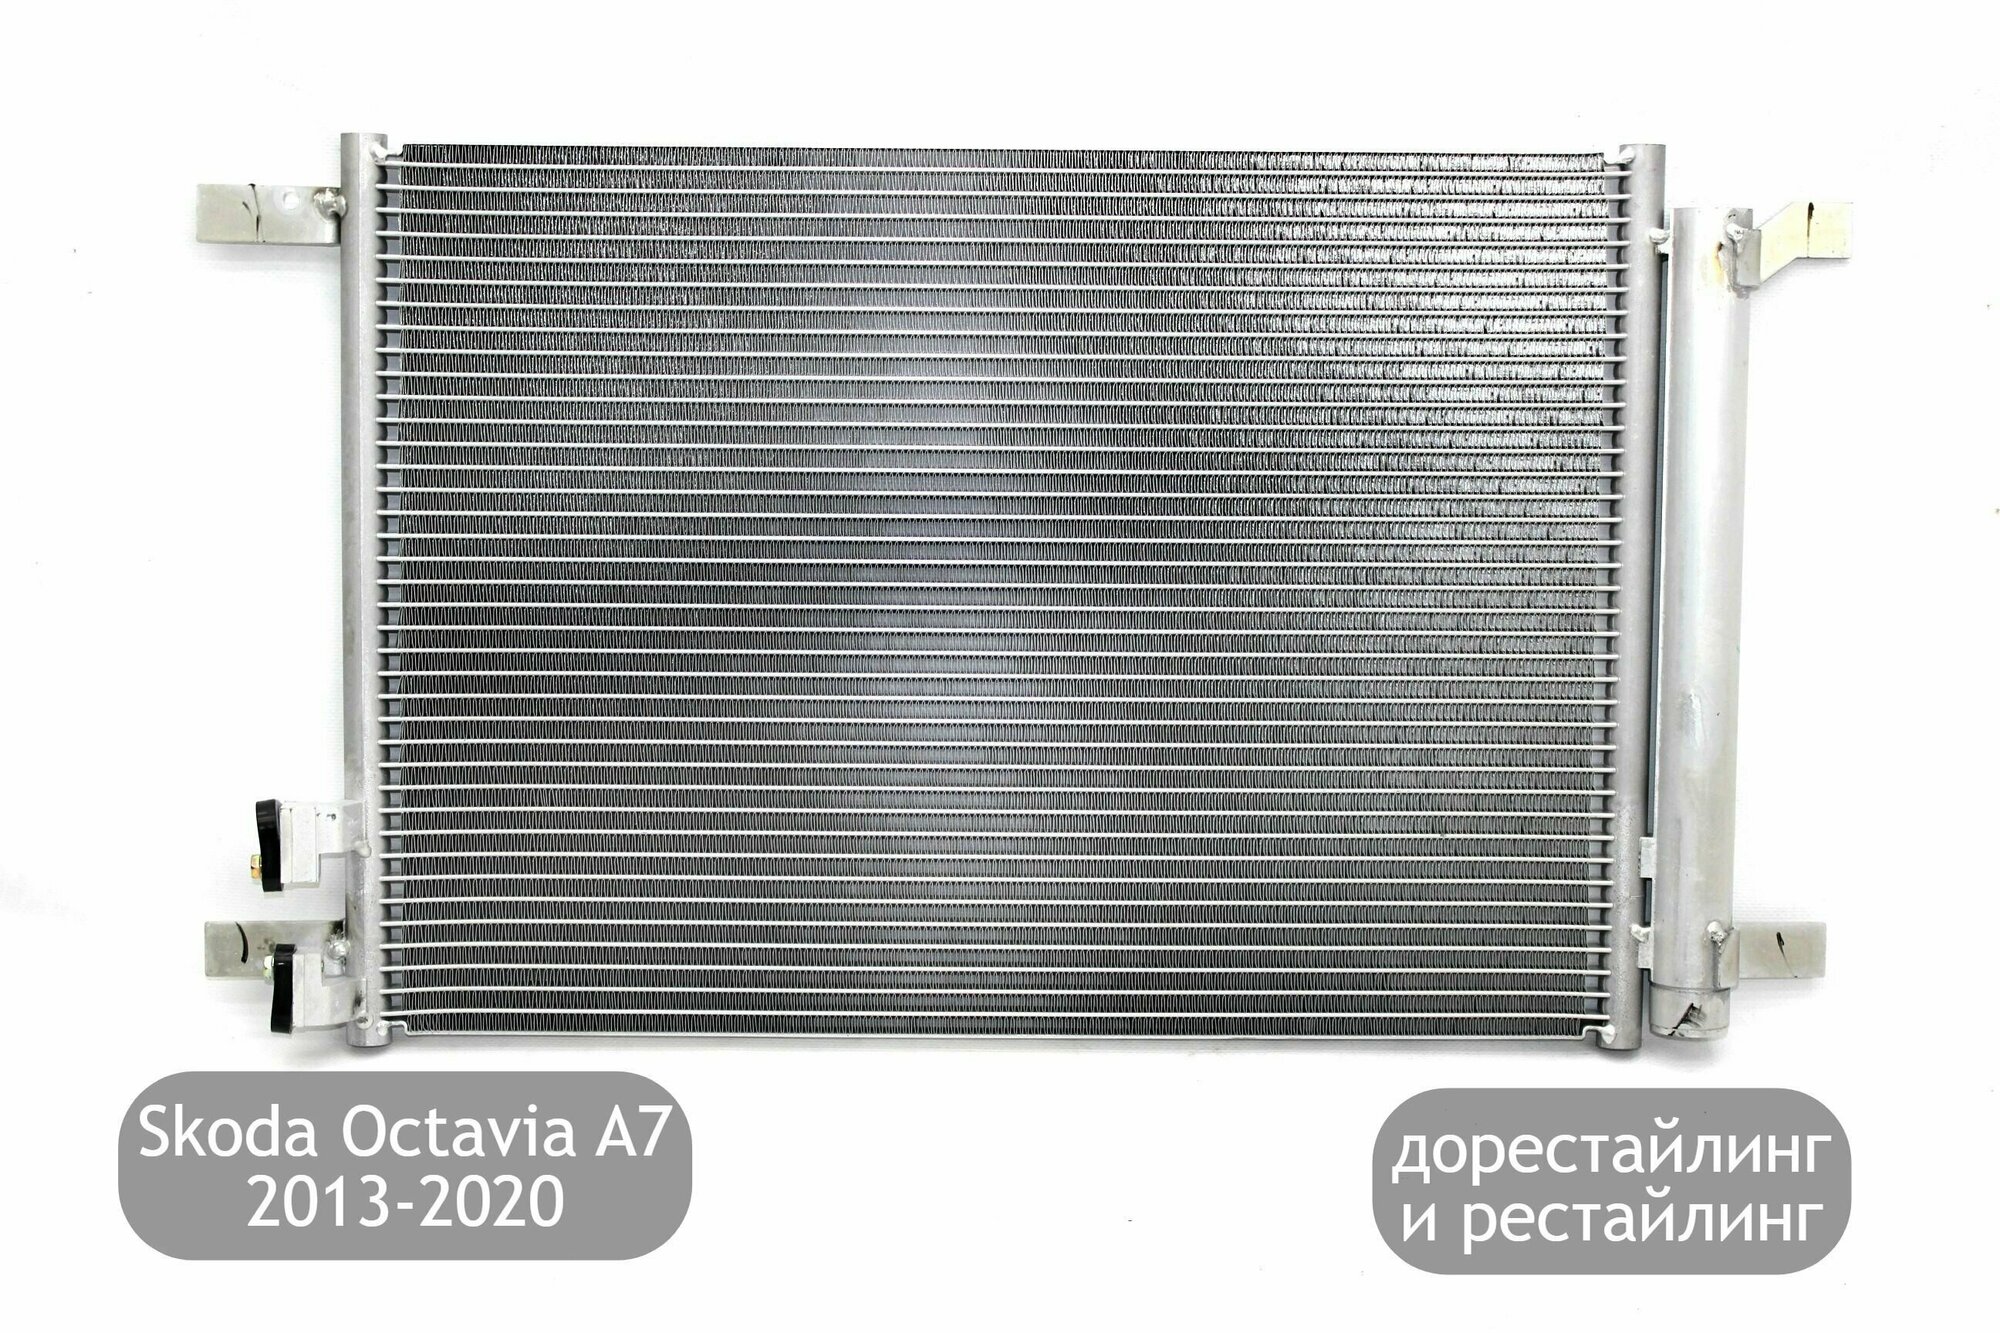 Радиатор кондиционера для Skoda Octavia A7 2013-2020 (дорестайлинг и рестайлинг)